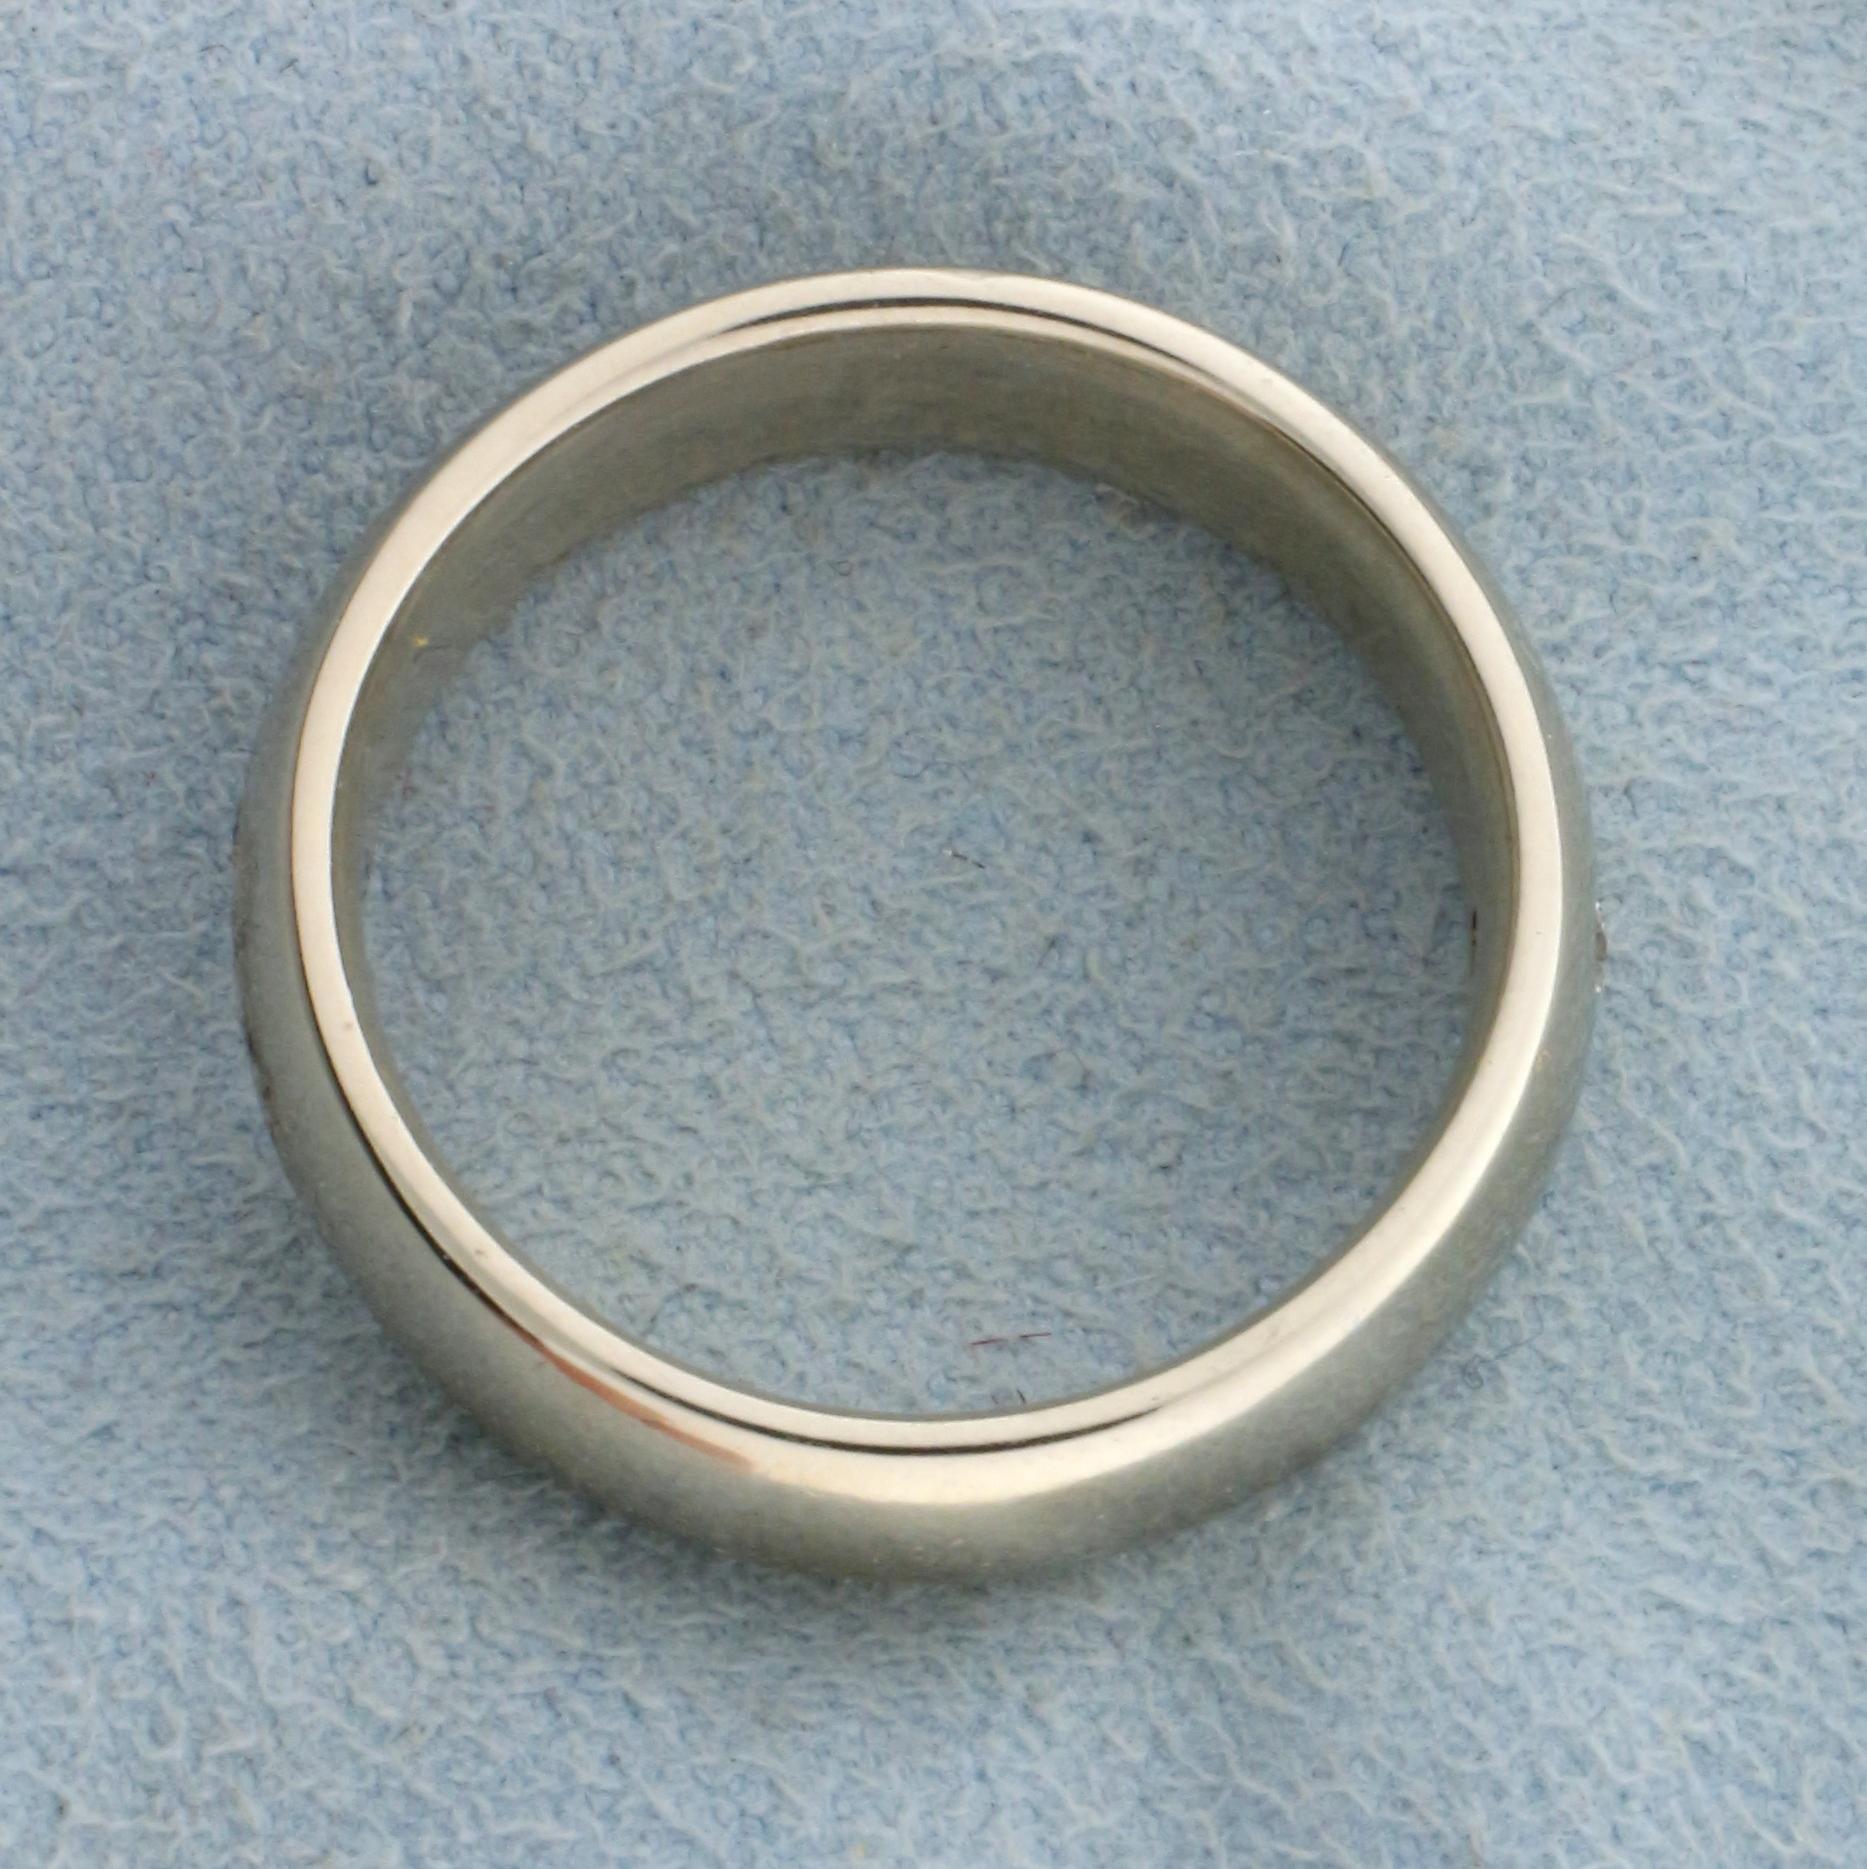 Diamond Wedding Band Ring In 14k White Gold